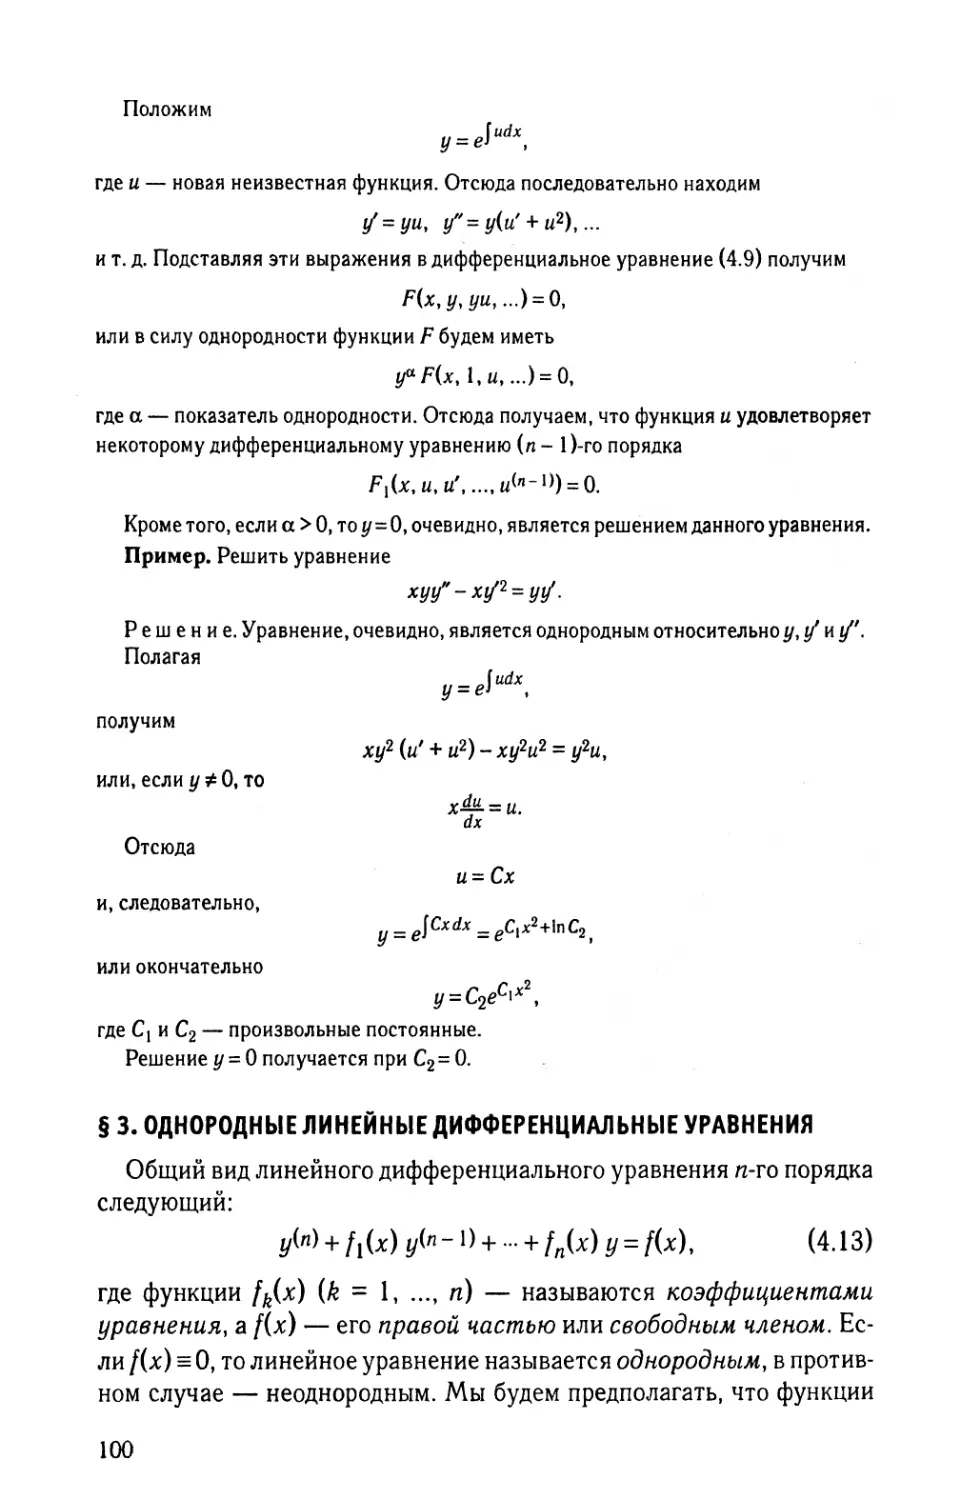 § 3. Однородные линейные дифференциальные уравнения